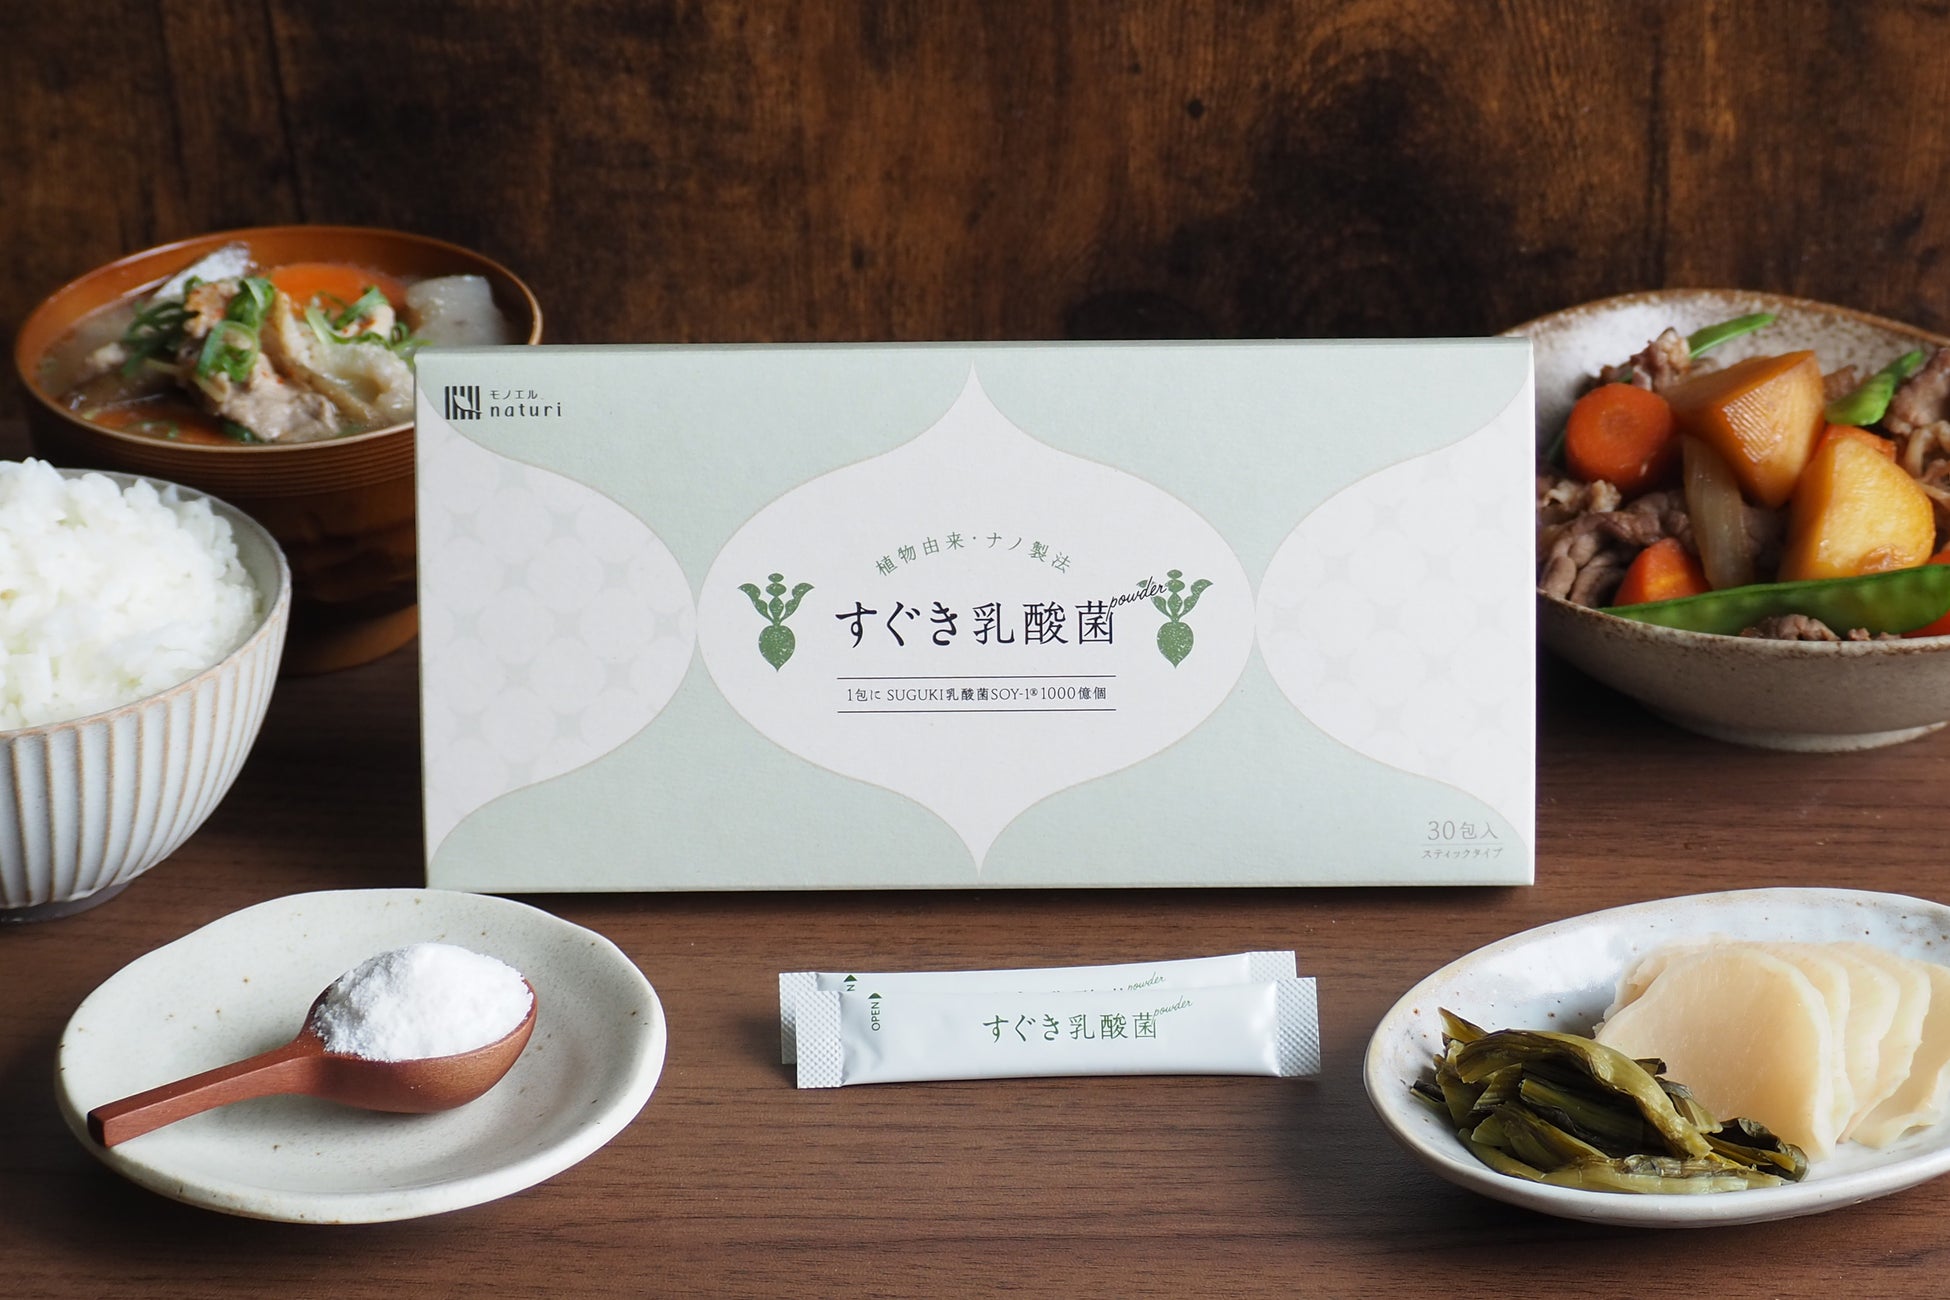 【すぐき乳酸菌パウダー】日本古来の発酵食文化から生まれた力強い植物性乳酸菌を、毎日安定して、普段の食事...